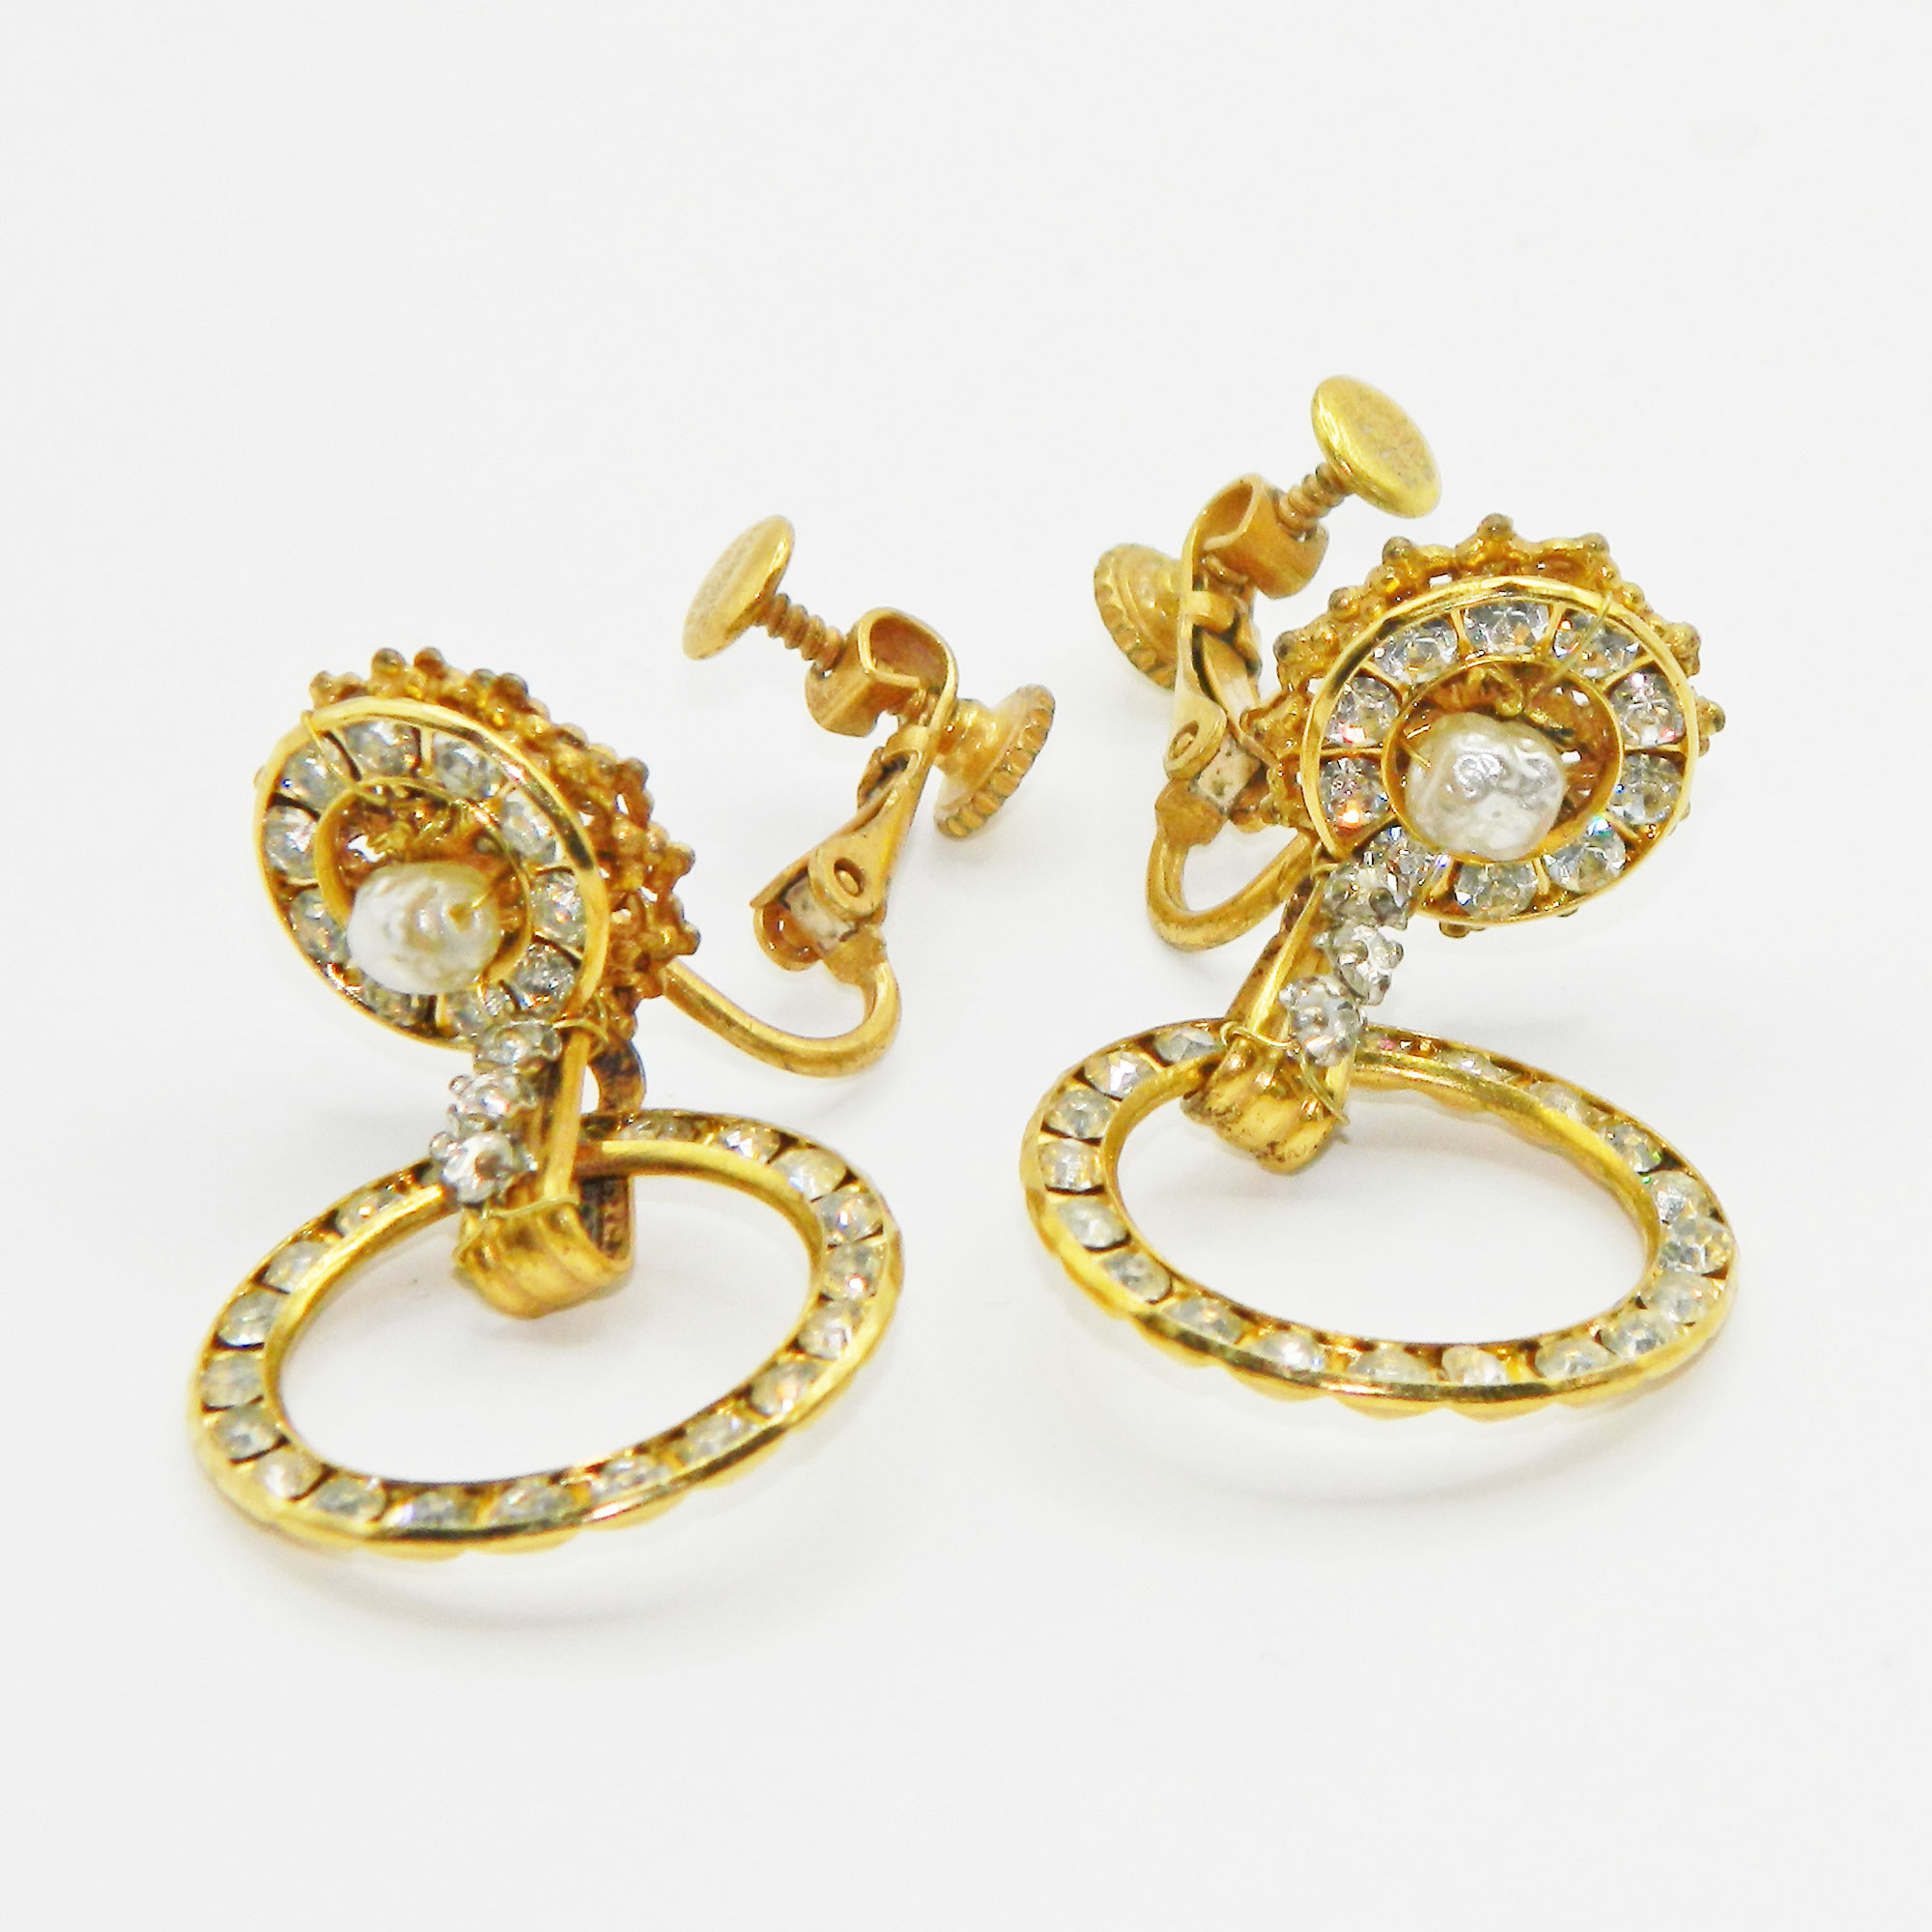 1970s Miriam Haskell earrings